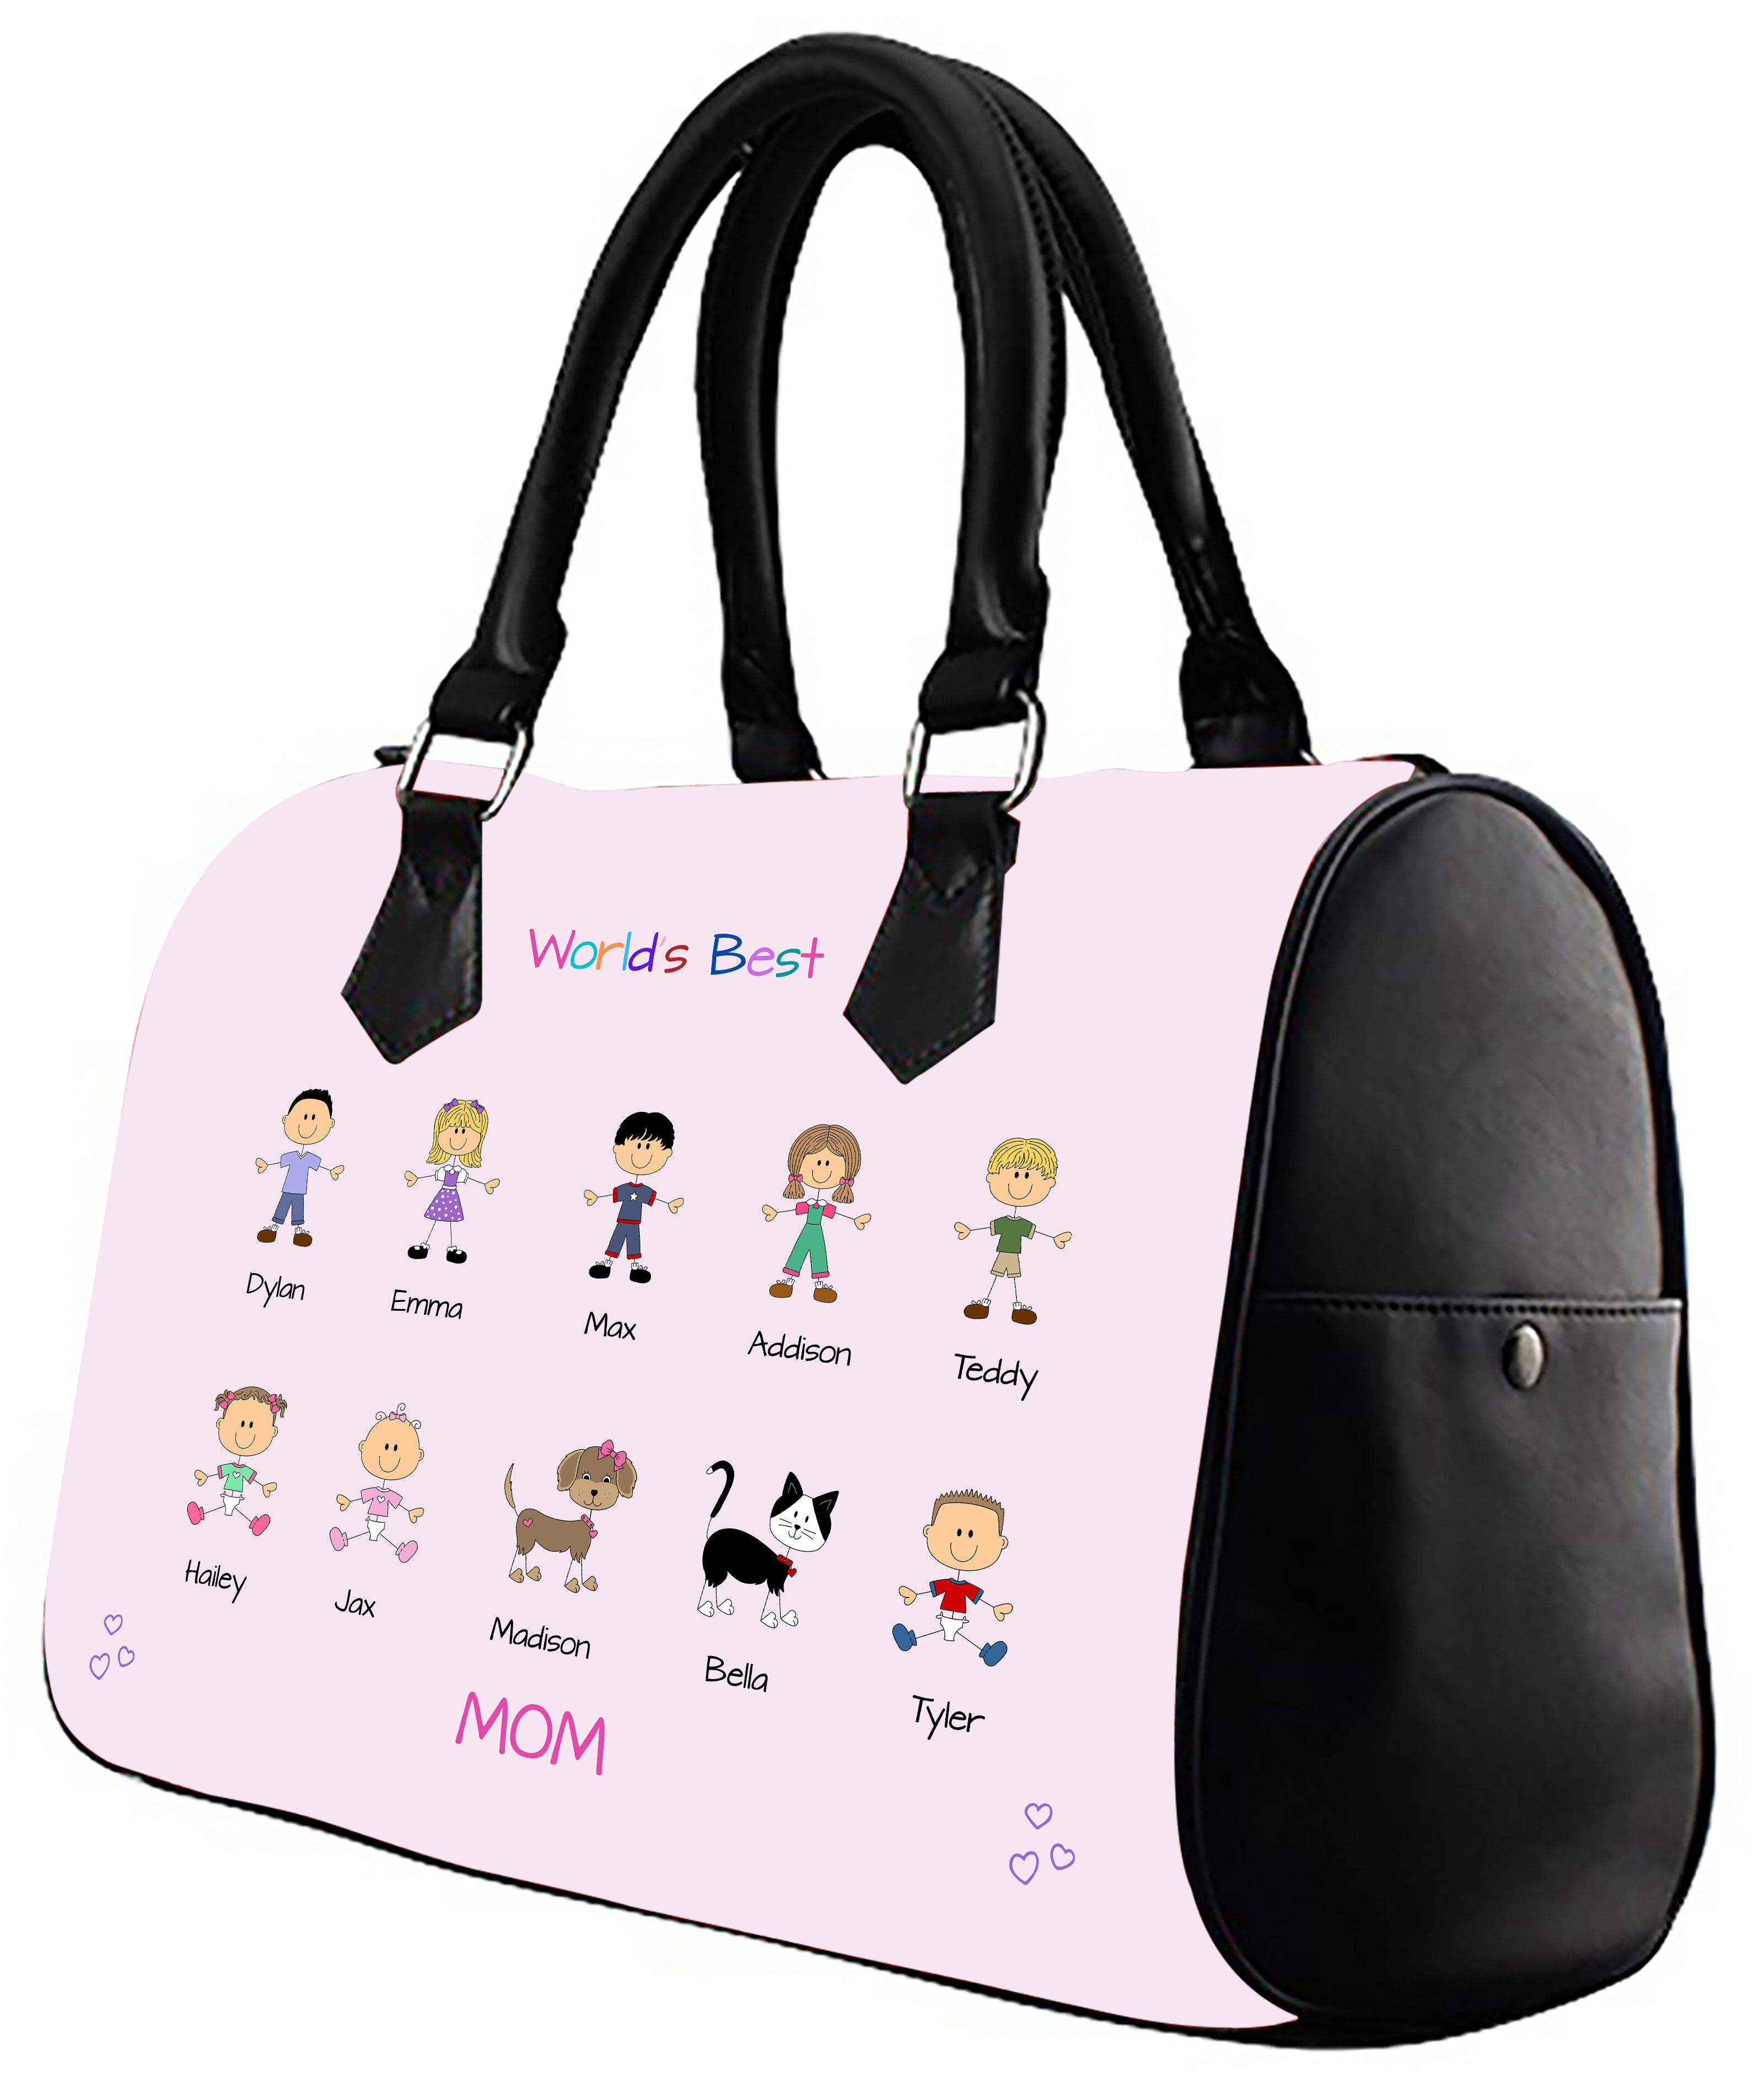 Top 10 Mom Bags  Mom bags, Mom purses, Mom purse handbags